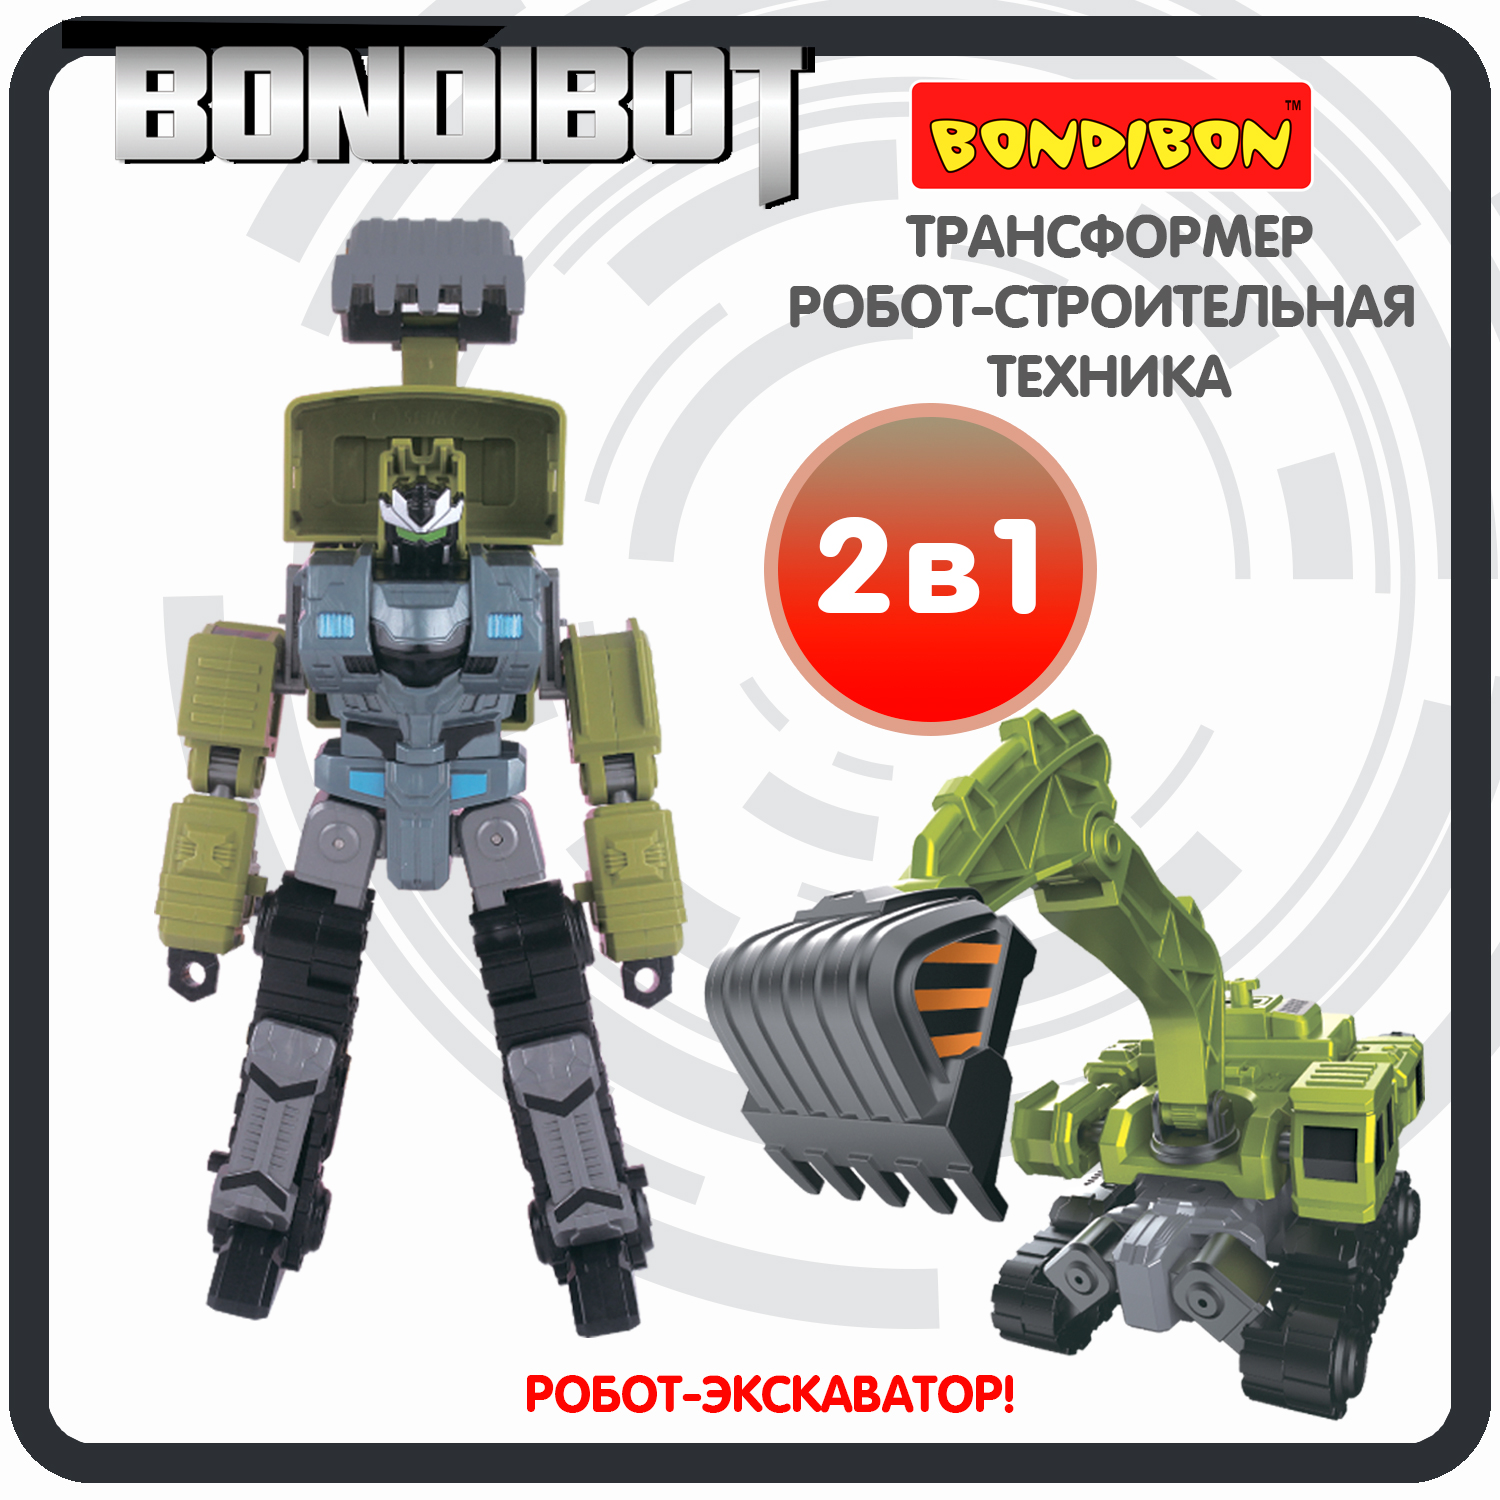 Трансформер робот-строительная техника, 2в1 BONDIBOT Bondibon, экскаватор / ВВ6054